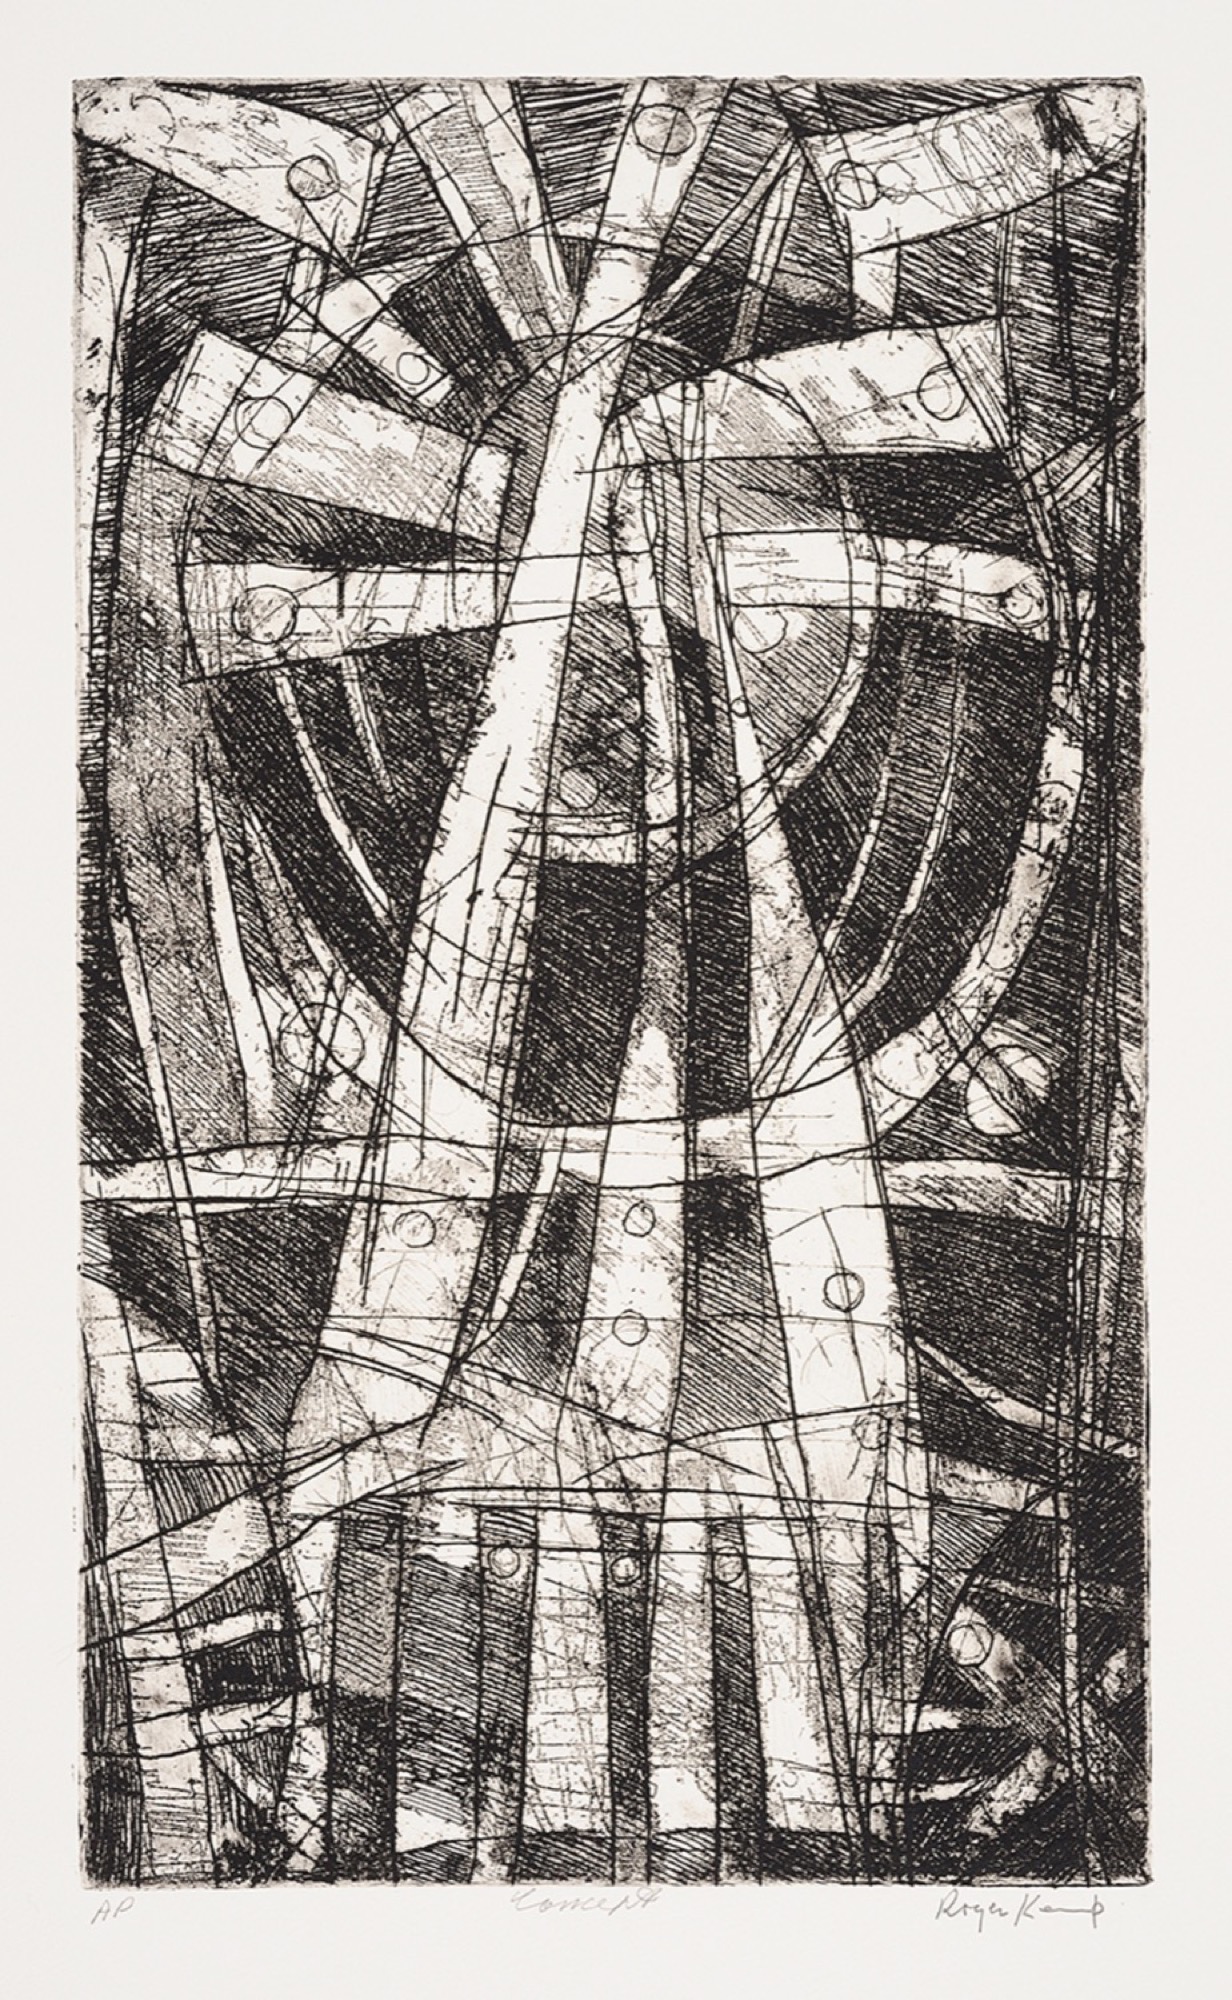 Roger Kemp, <em>Concept</em>, c. 1973 – 1974, etching on paper, 50.4 x 30.0 cm. Copyright Estate of Roger Kemp, Image courtesy Charles Nodrum Gallery